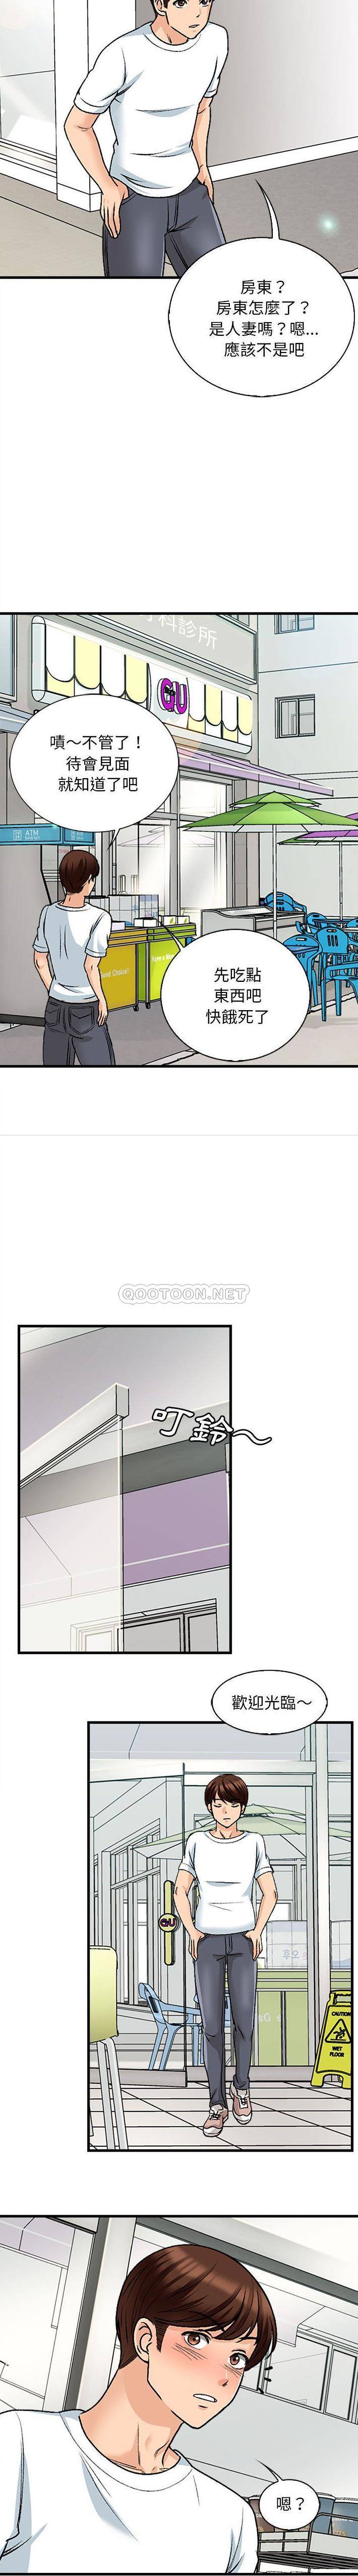 幸福公寓  第9话 漫画图片7.jpg